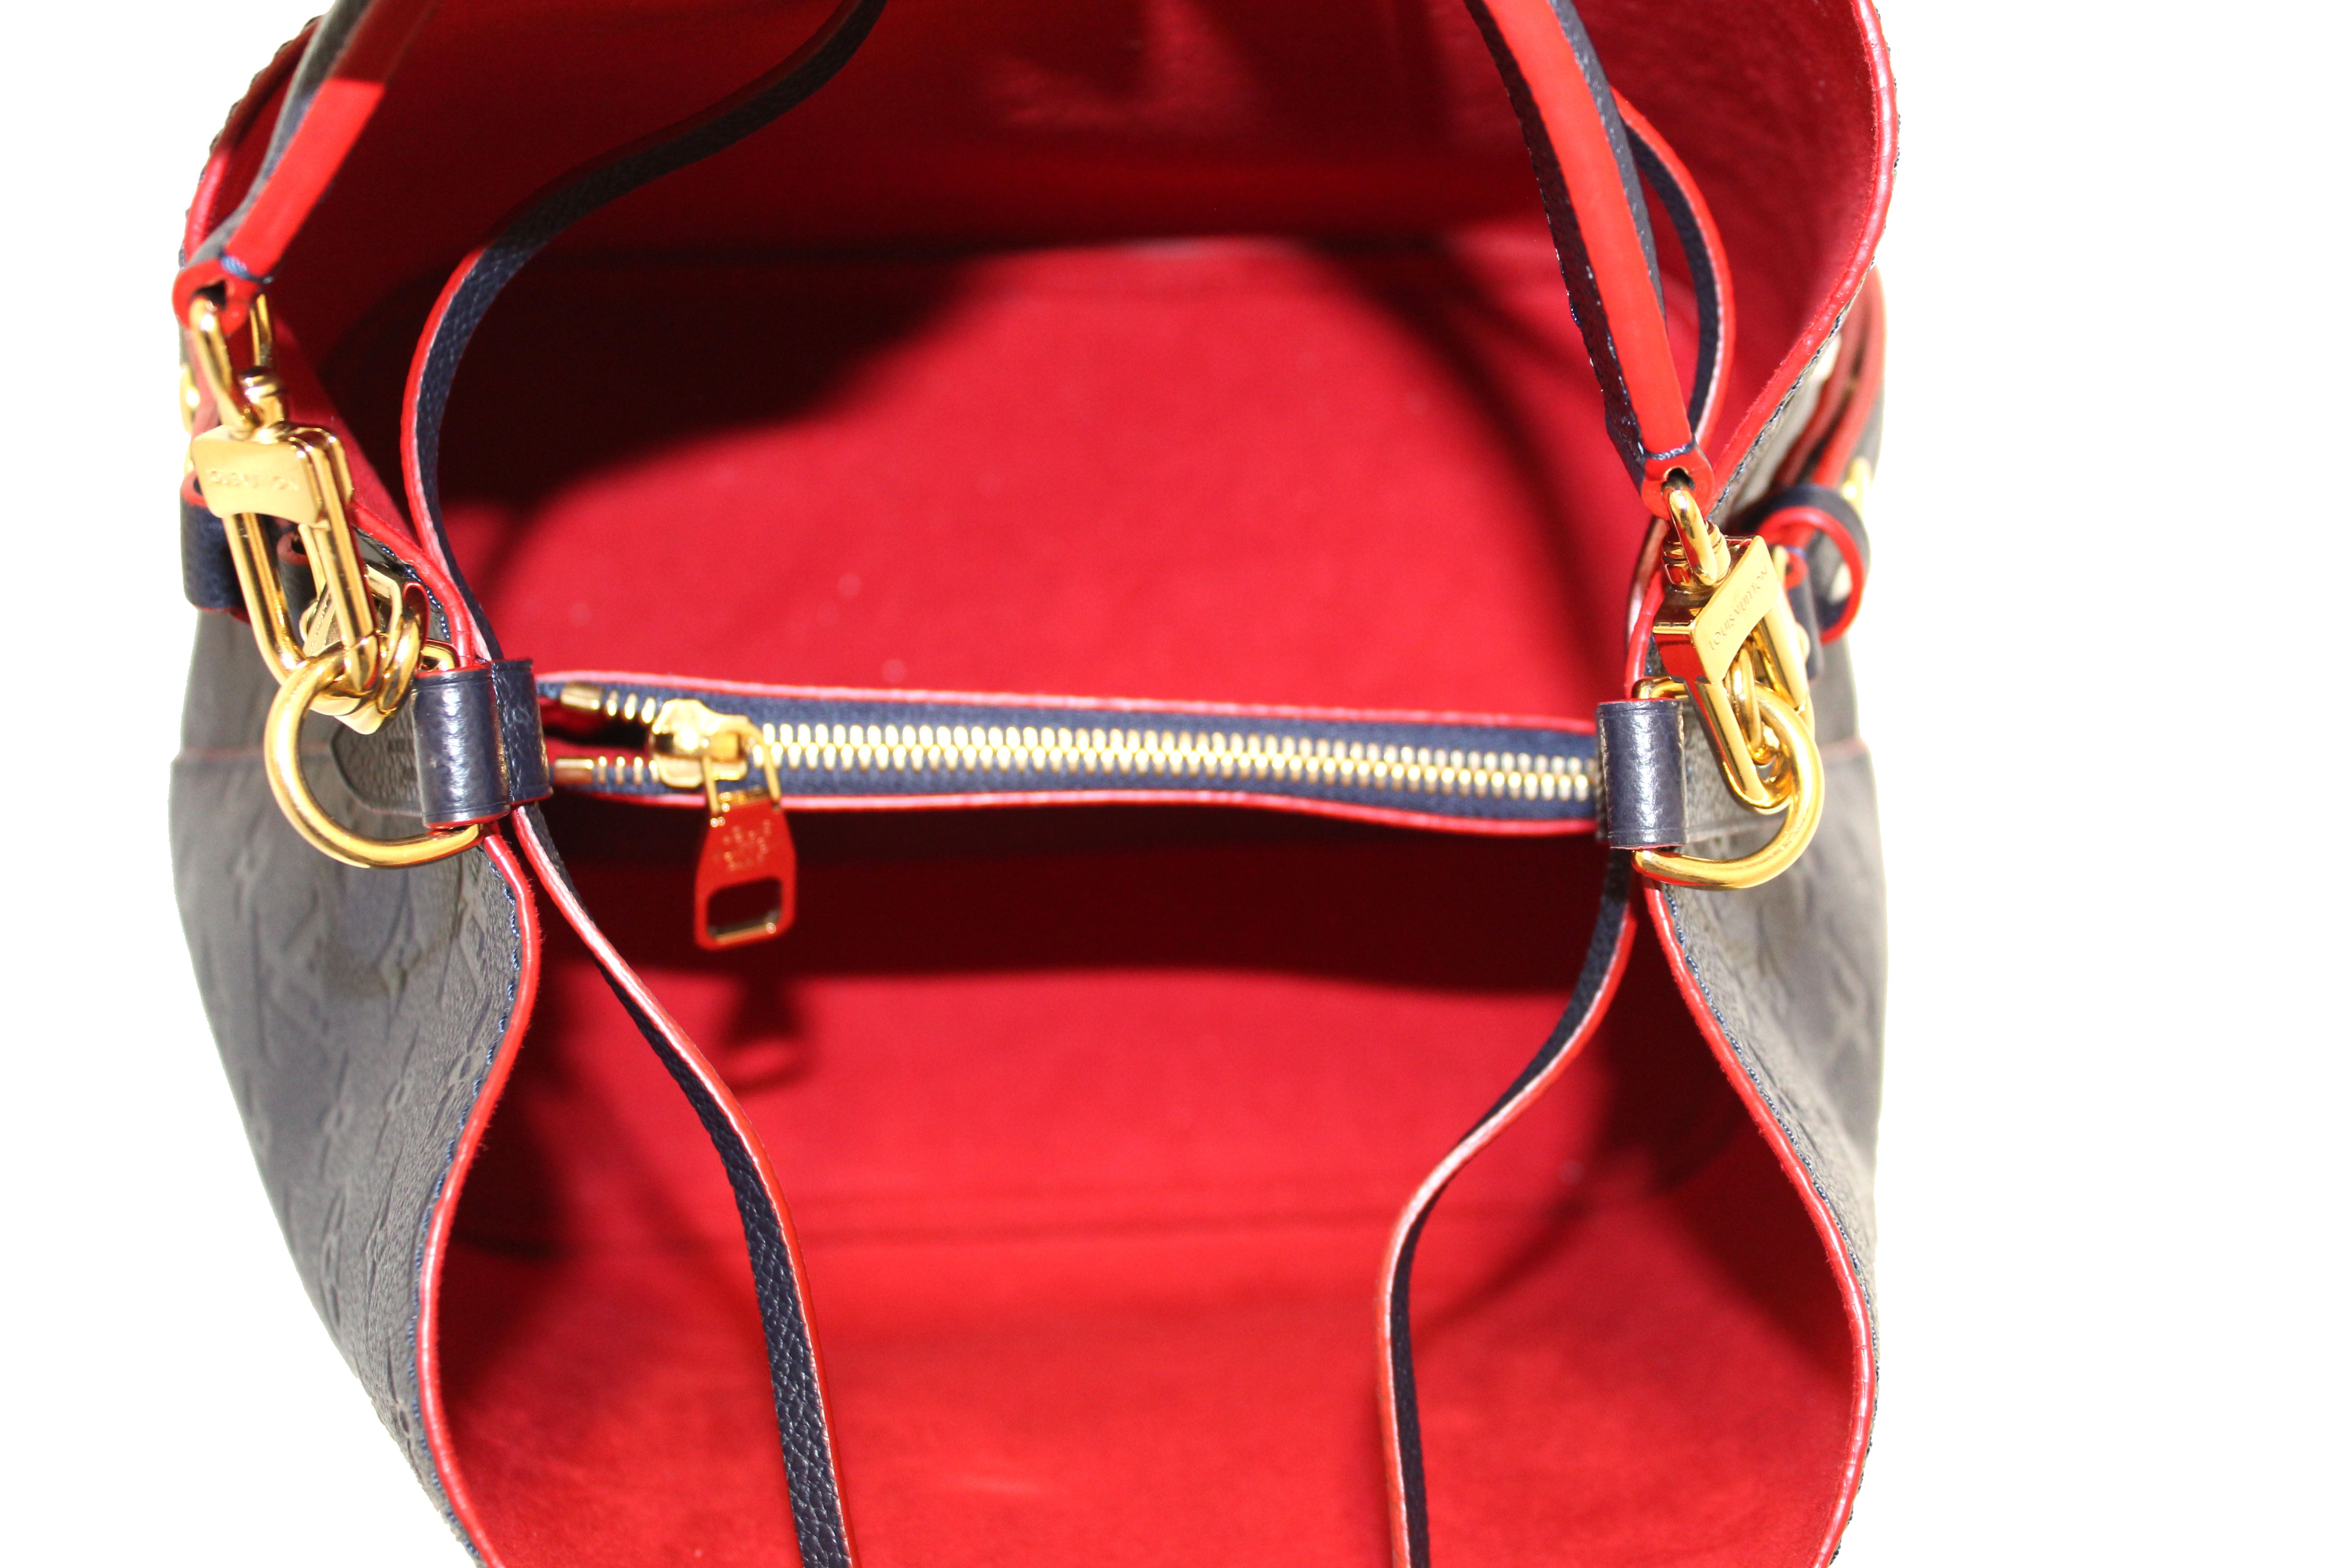 Neonoe MM Shoulder bag in Monogram Empreinte leather, Gold Hardware